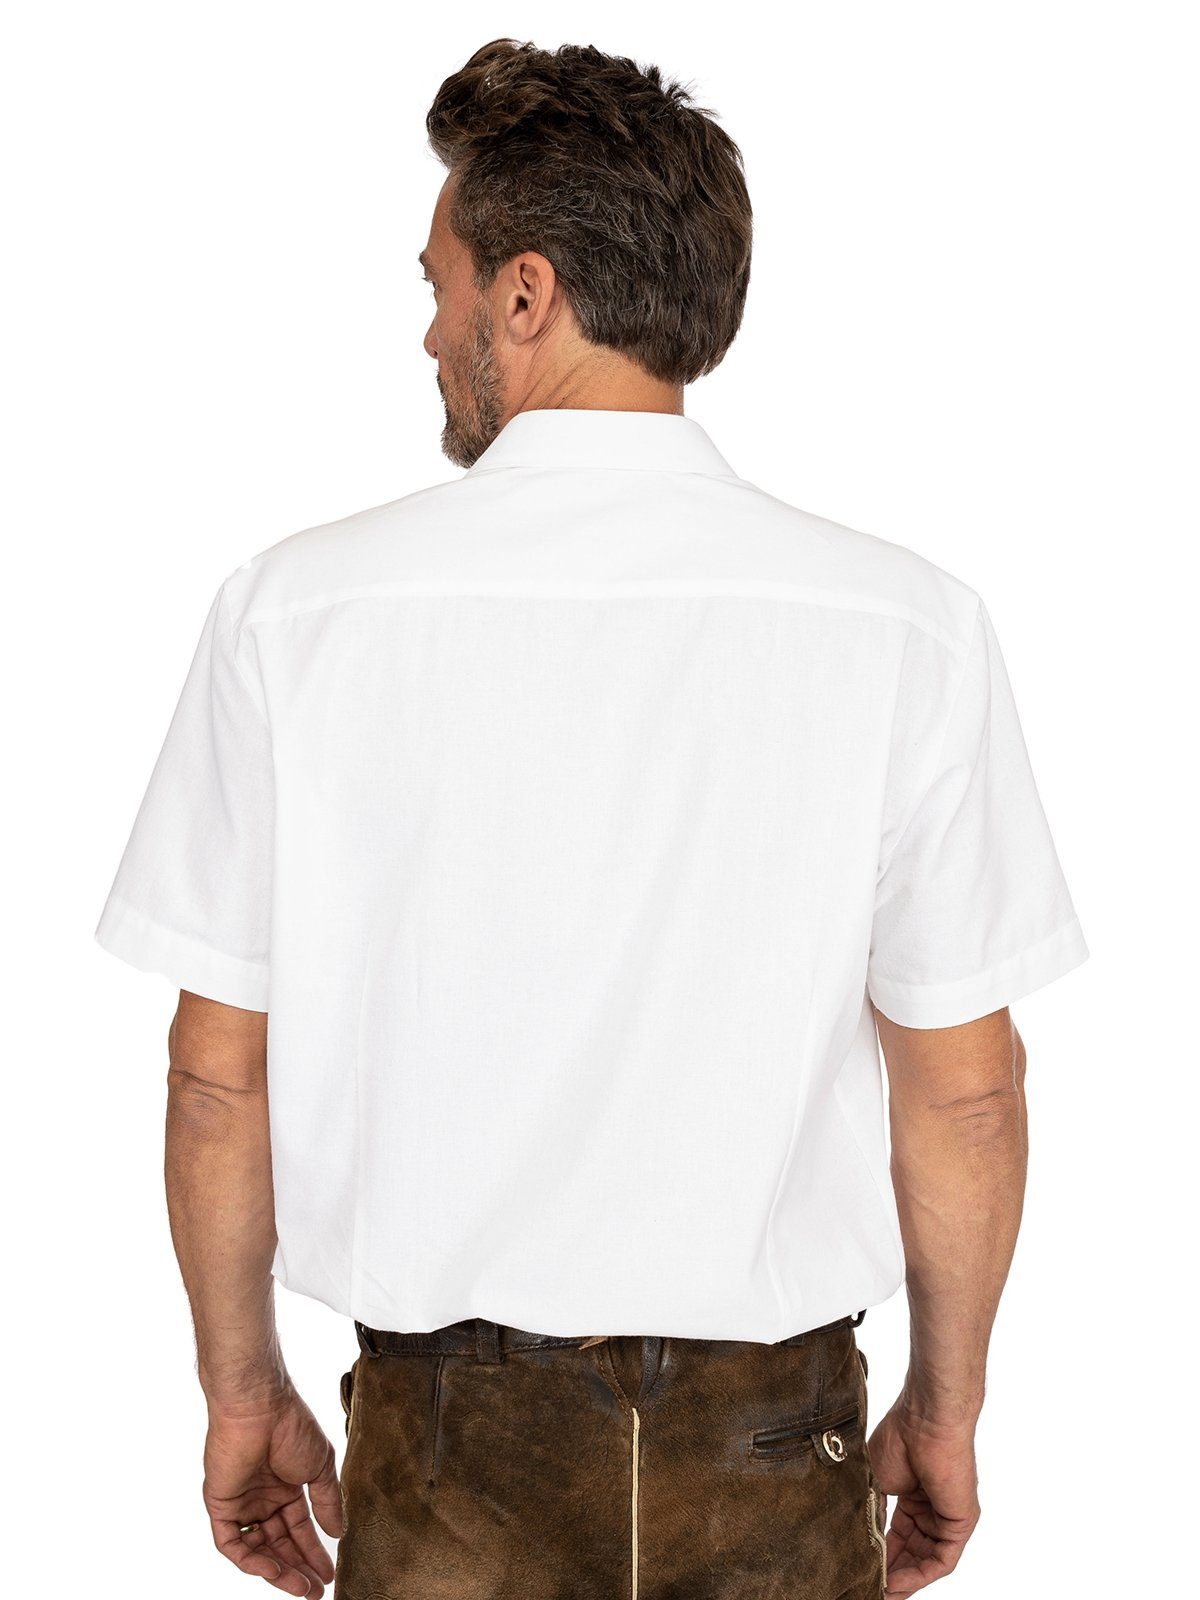 OS-Trachten Trachtenhemd Fit) CHIEMSEE Kurzarmhemd weiß (Slim